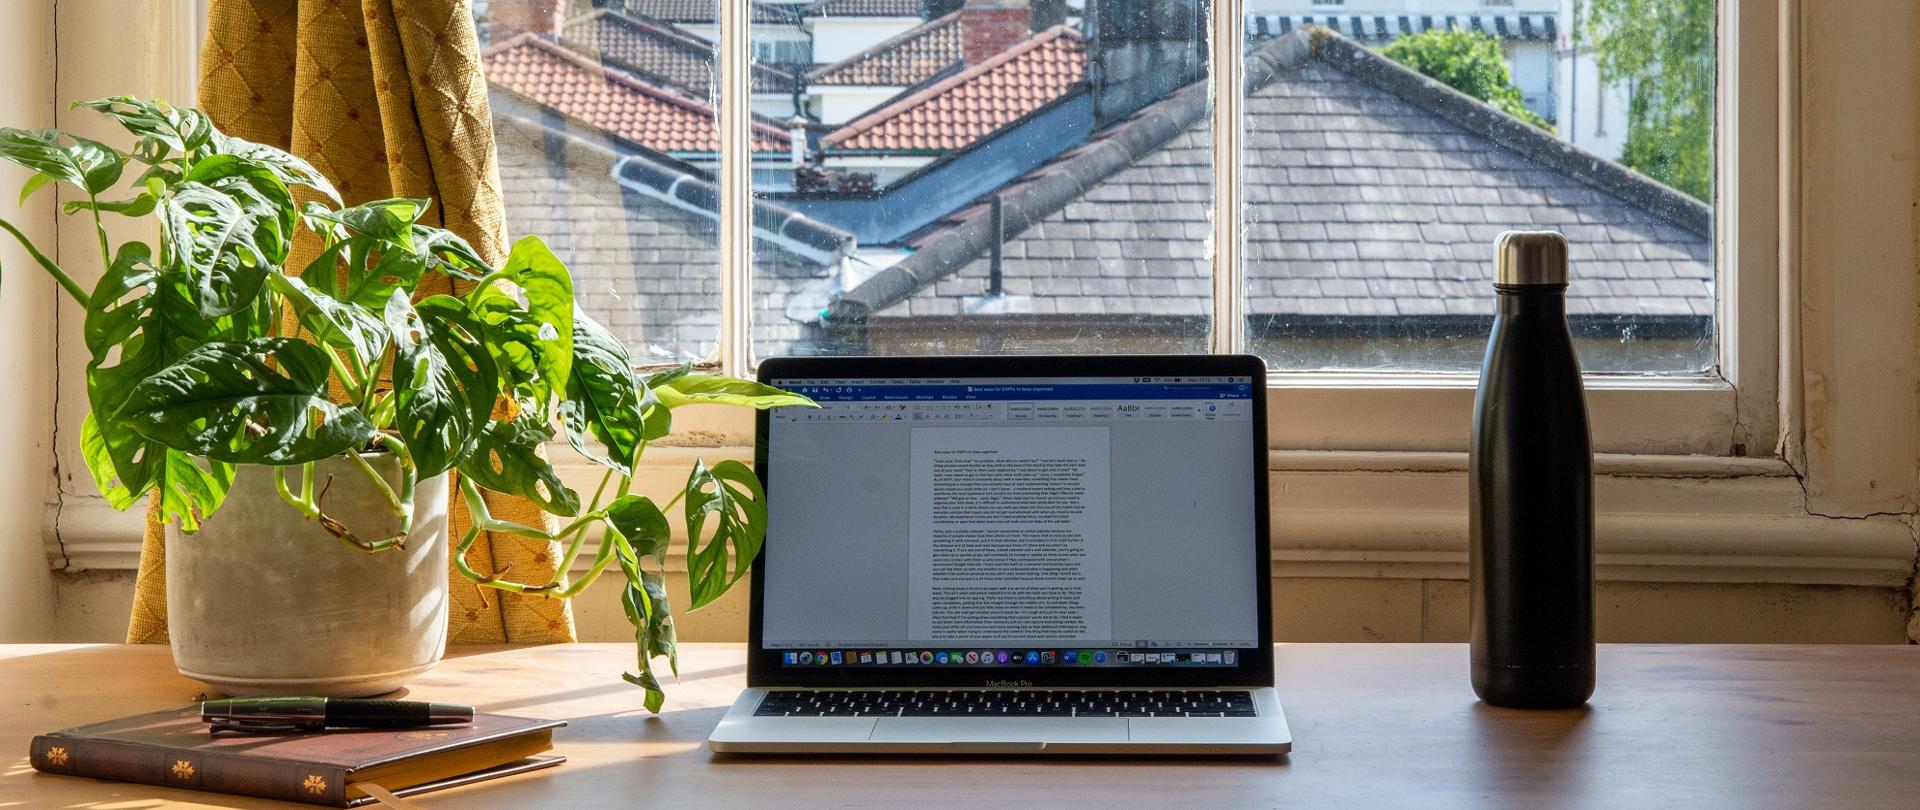 Zdjęcie - laptop stojący na stole, obok roślina w doniczce, za nim okno z widokiem na spadziste dachy zabudowań.